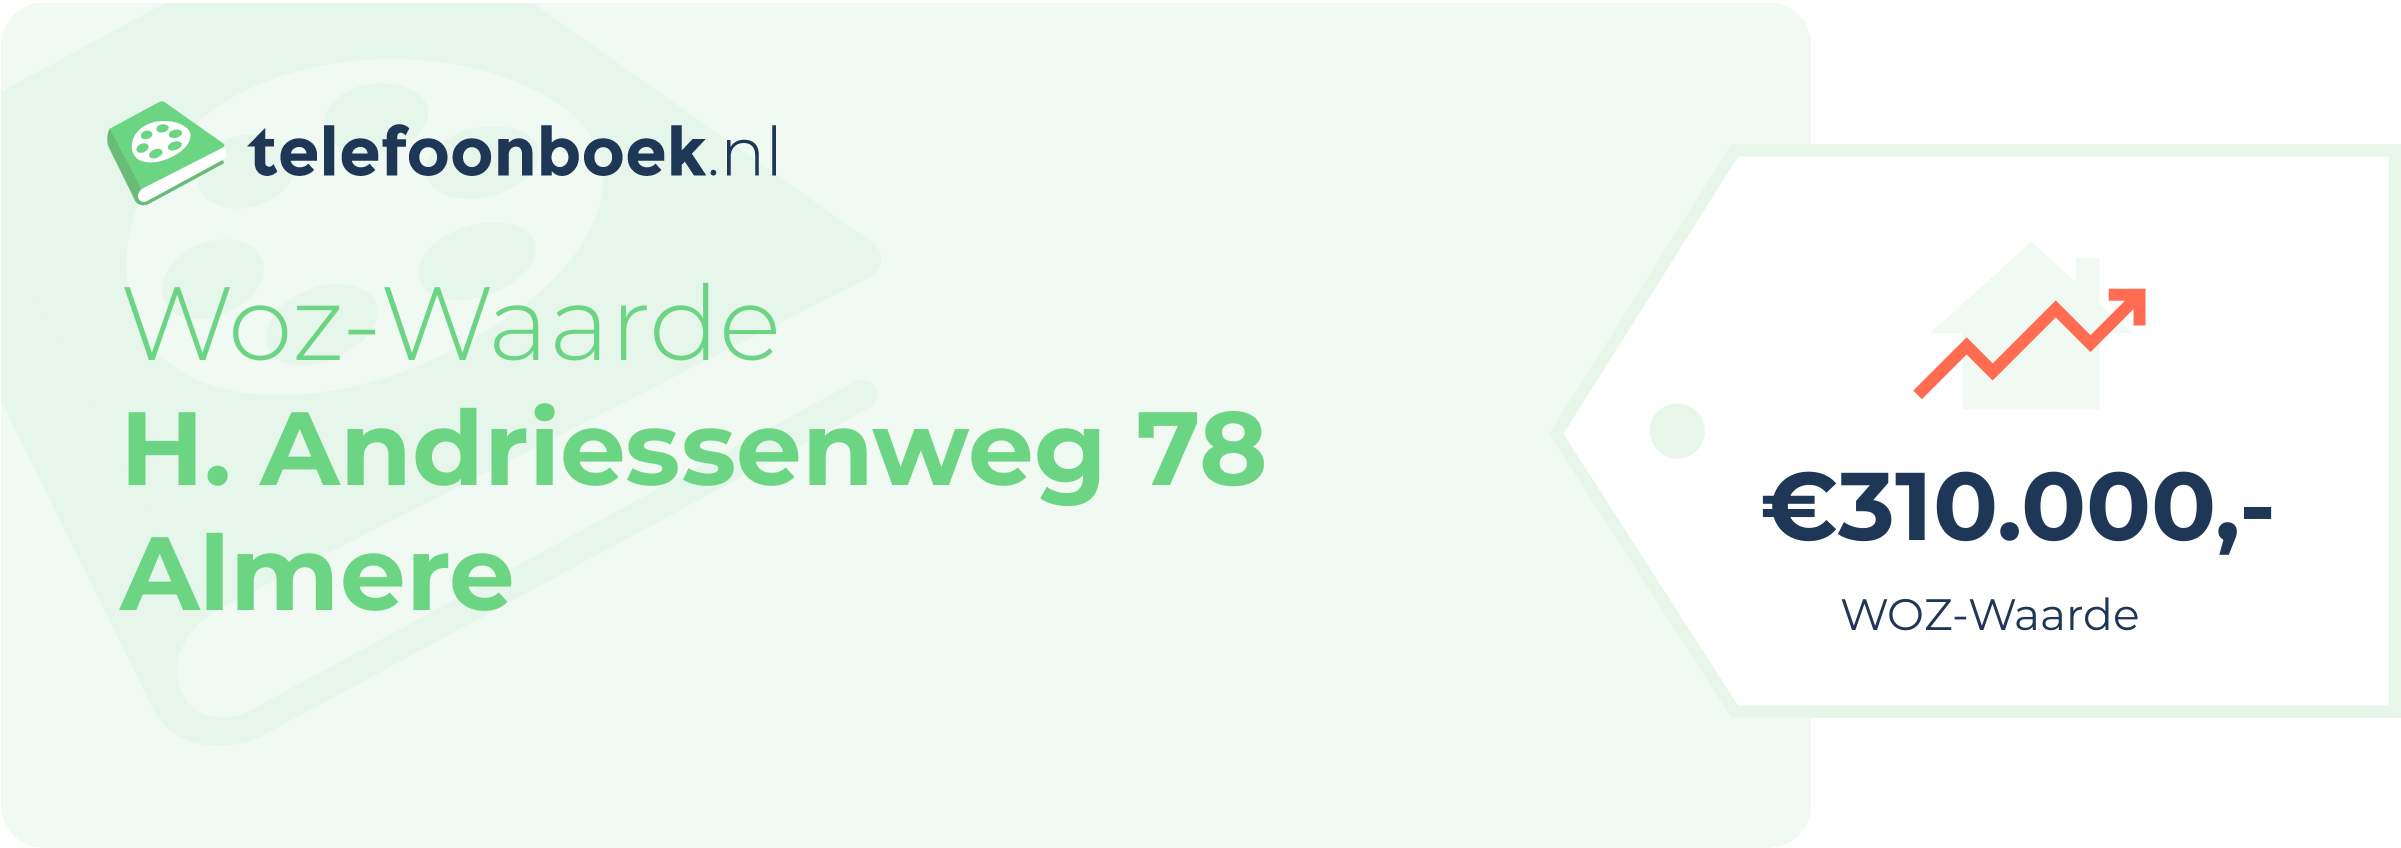 WOZ-waarde H. Andriessenweg 78 Almere